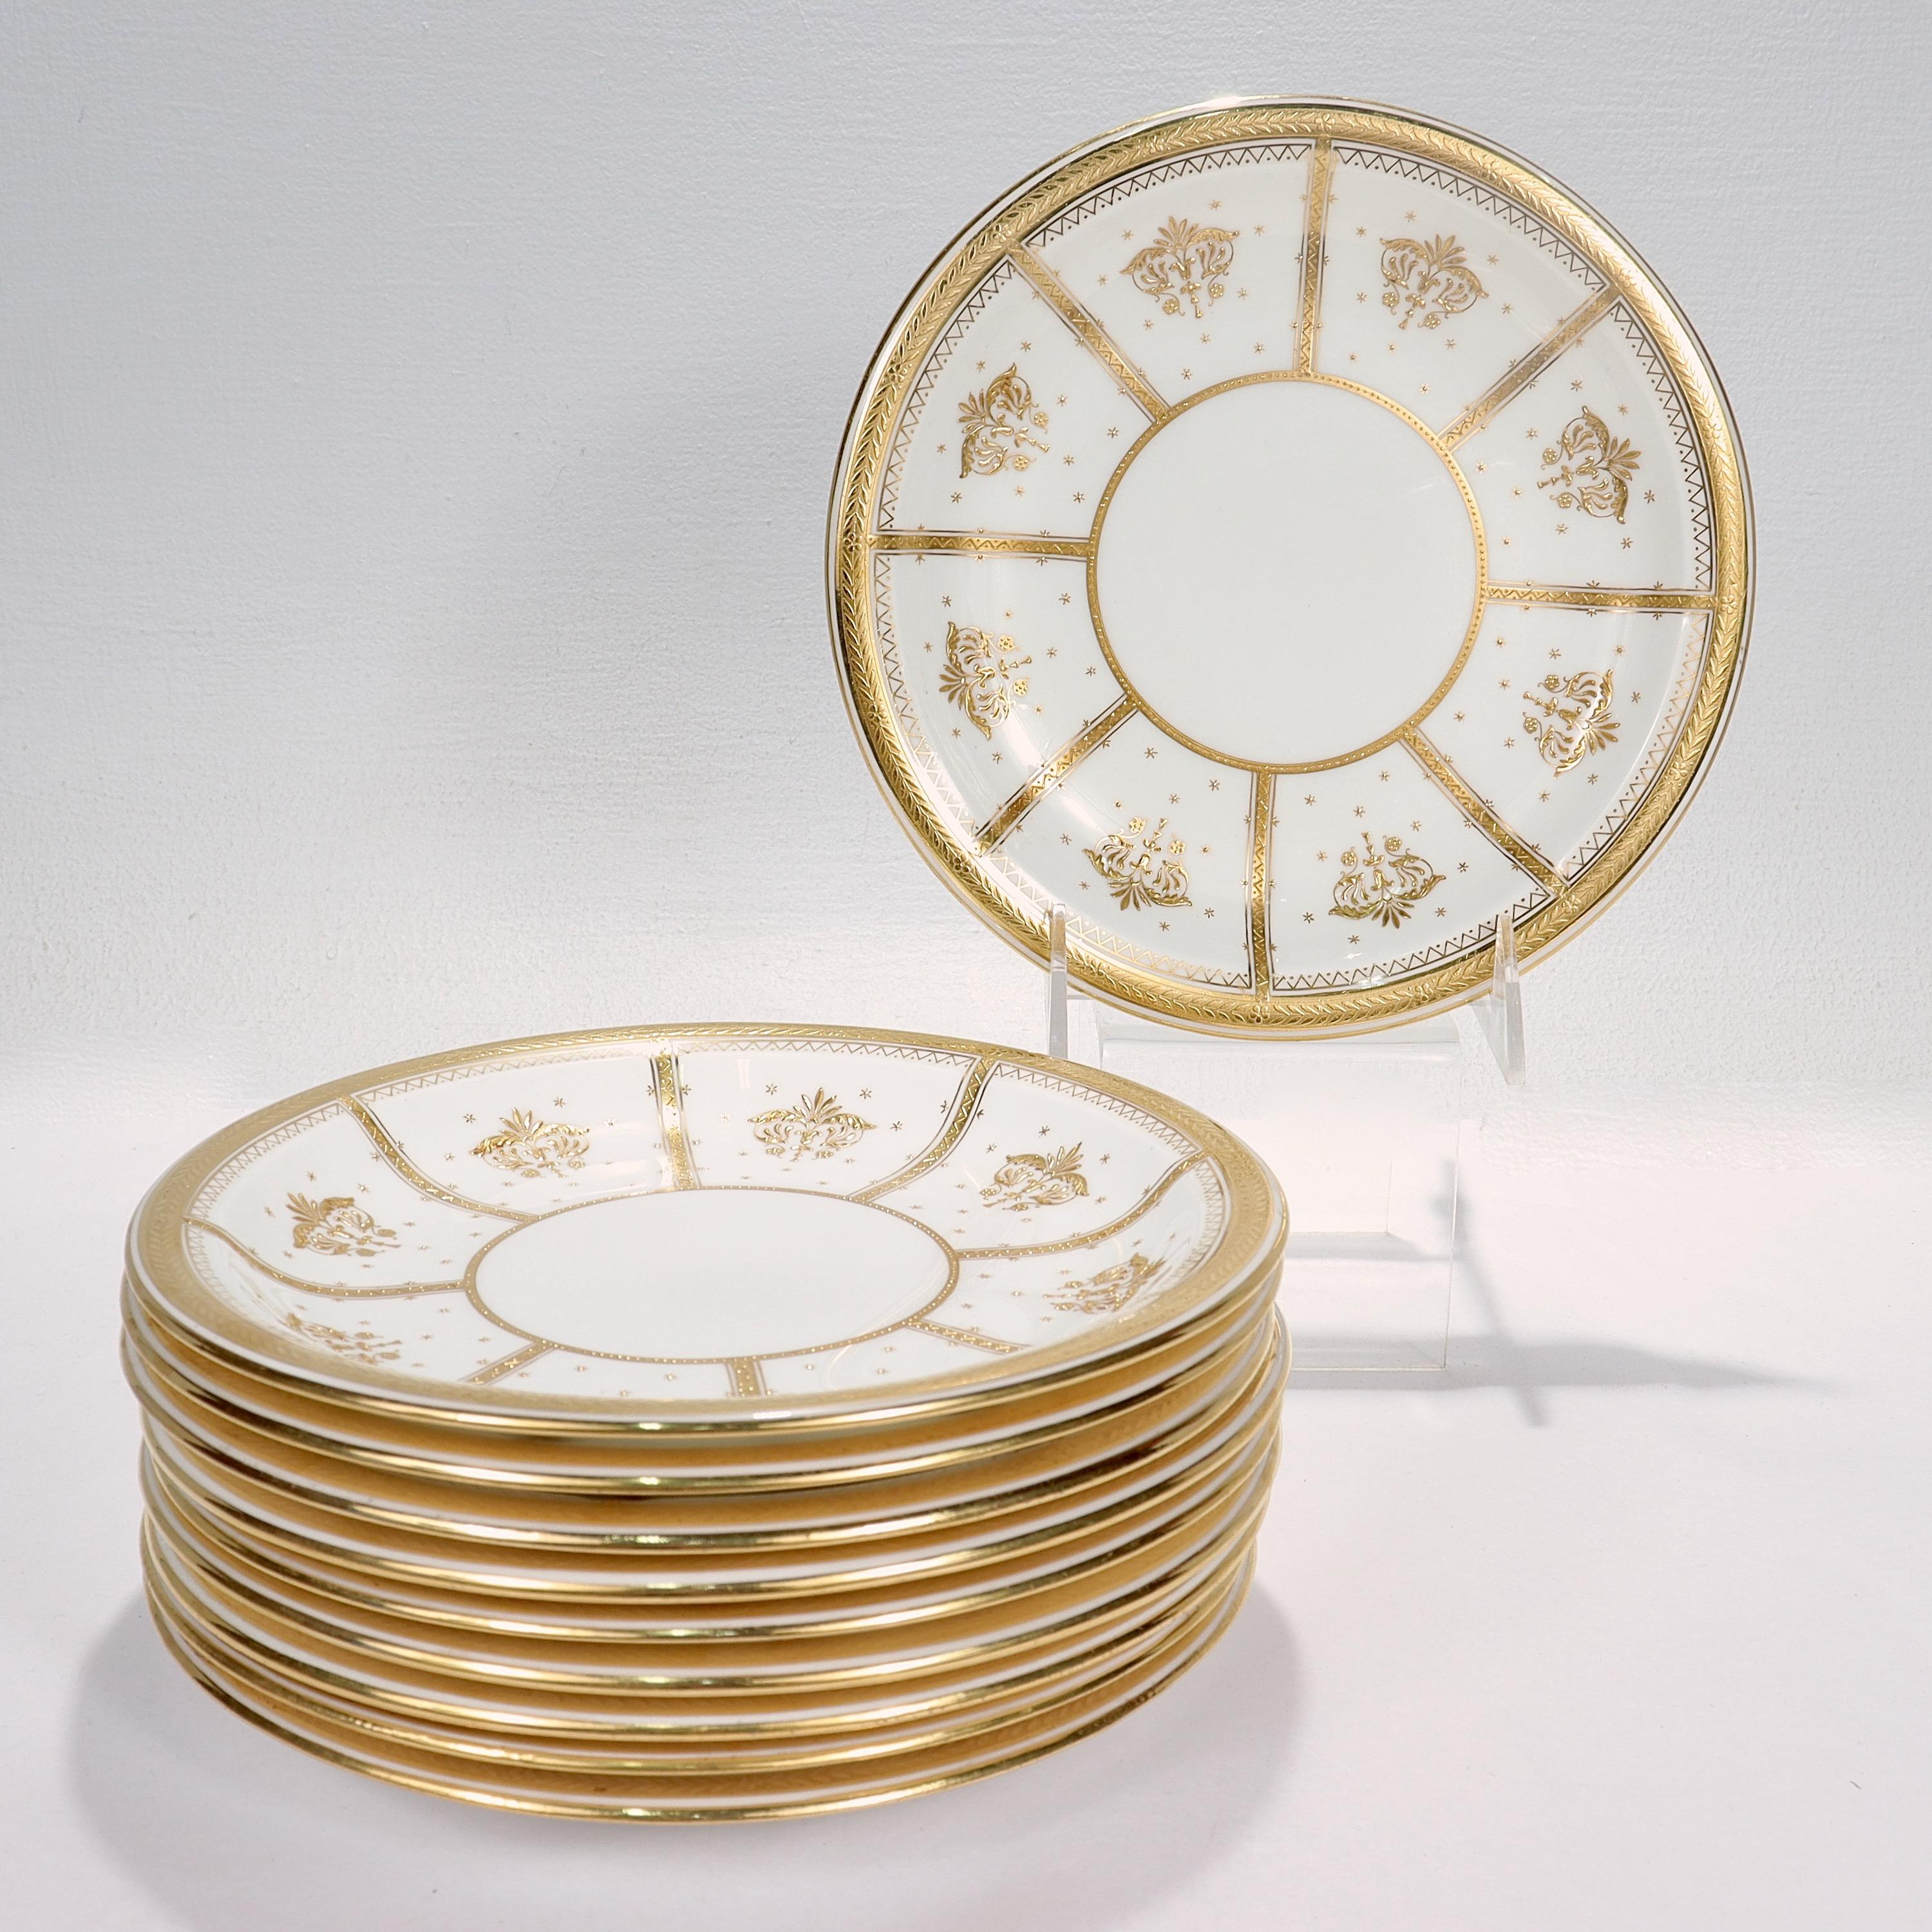 Un ensemble de 10 assiettes à déjeuner ou à dessert en porcelaine richement dorée.

Par Minton.

Dans un motif numéroté du Mouvement esthétique avec or en relief et bijoux en or sur l'ensemble de la pièce.

Chacune est marquée à la base d'une marque